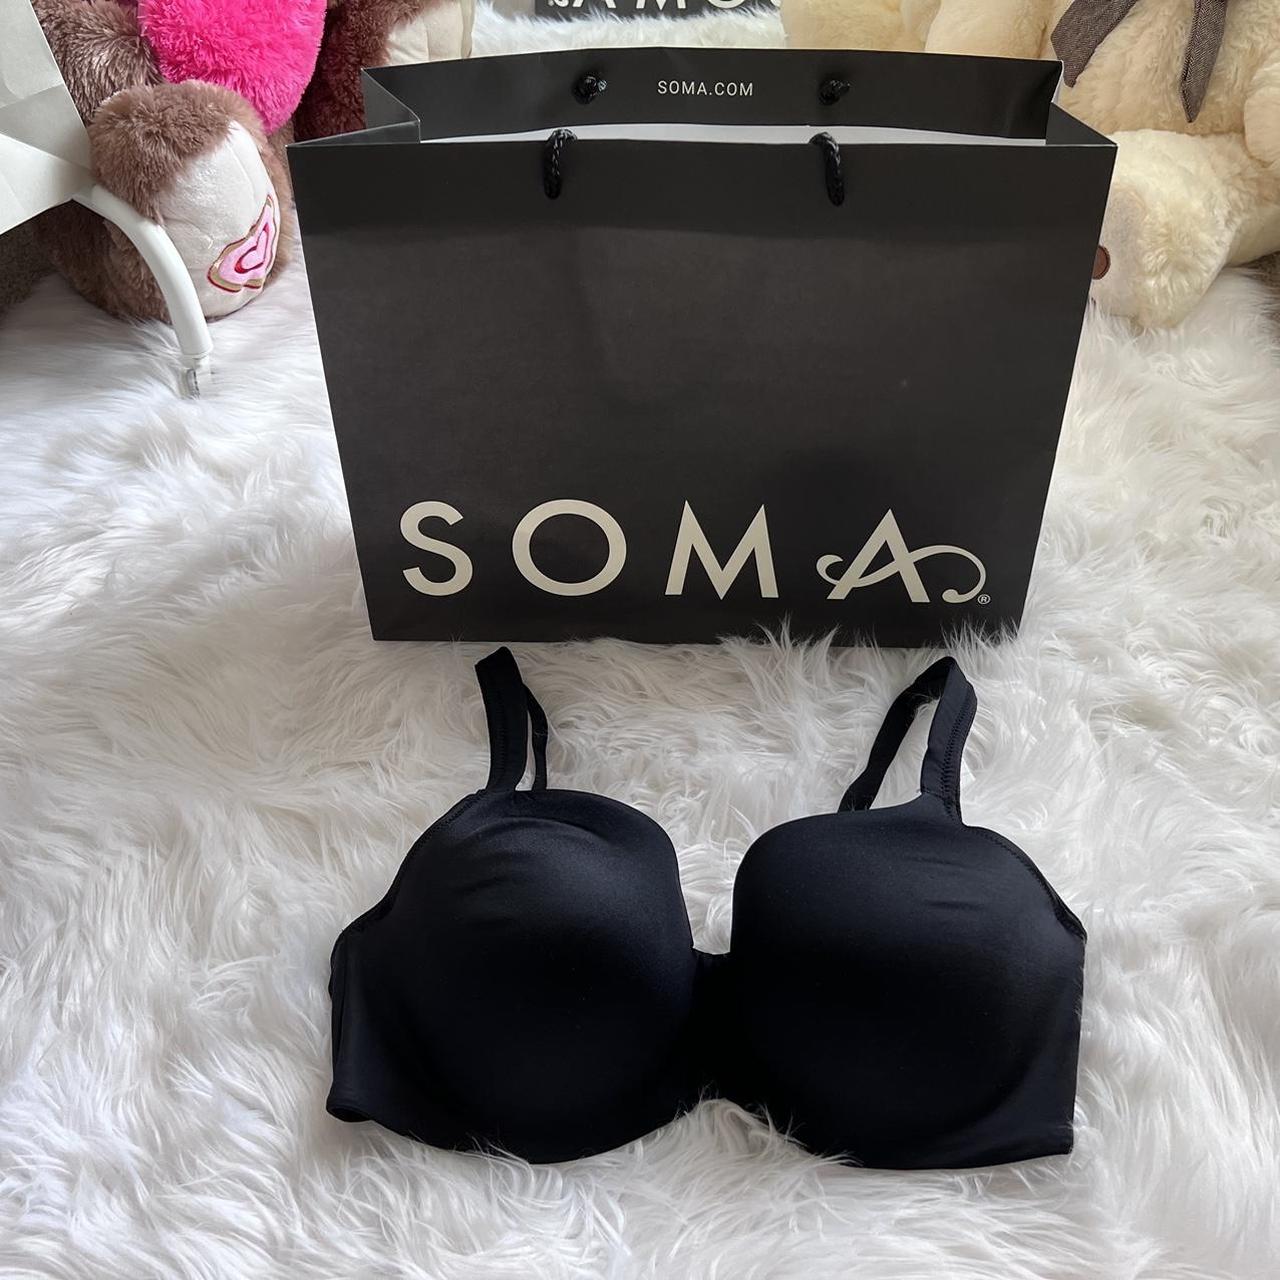 Soma, Intimates & Sleepwear, Soma Bra Size 36dd